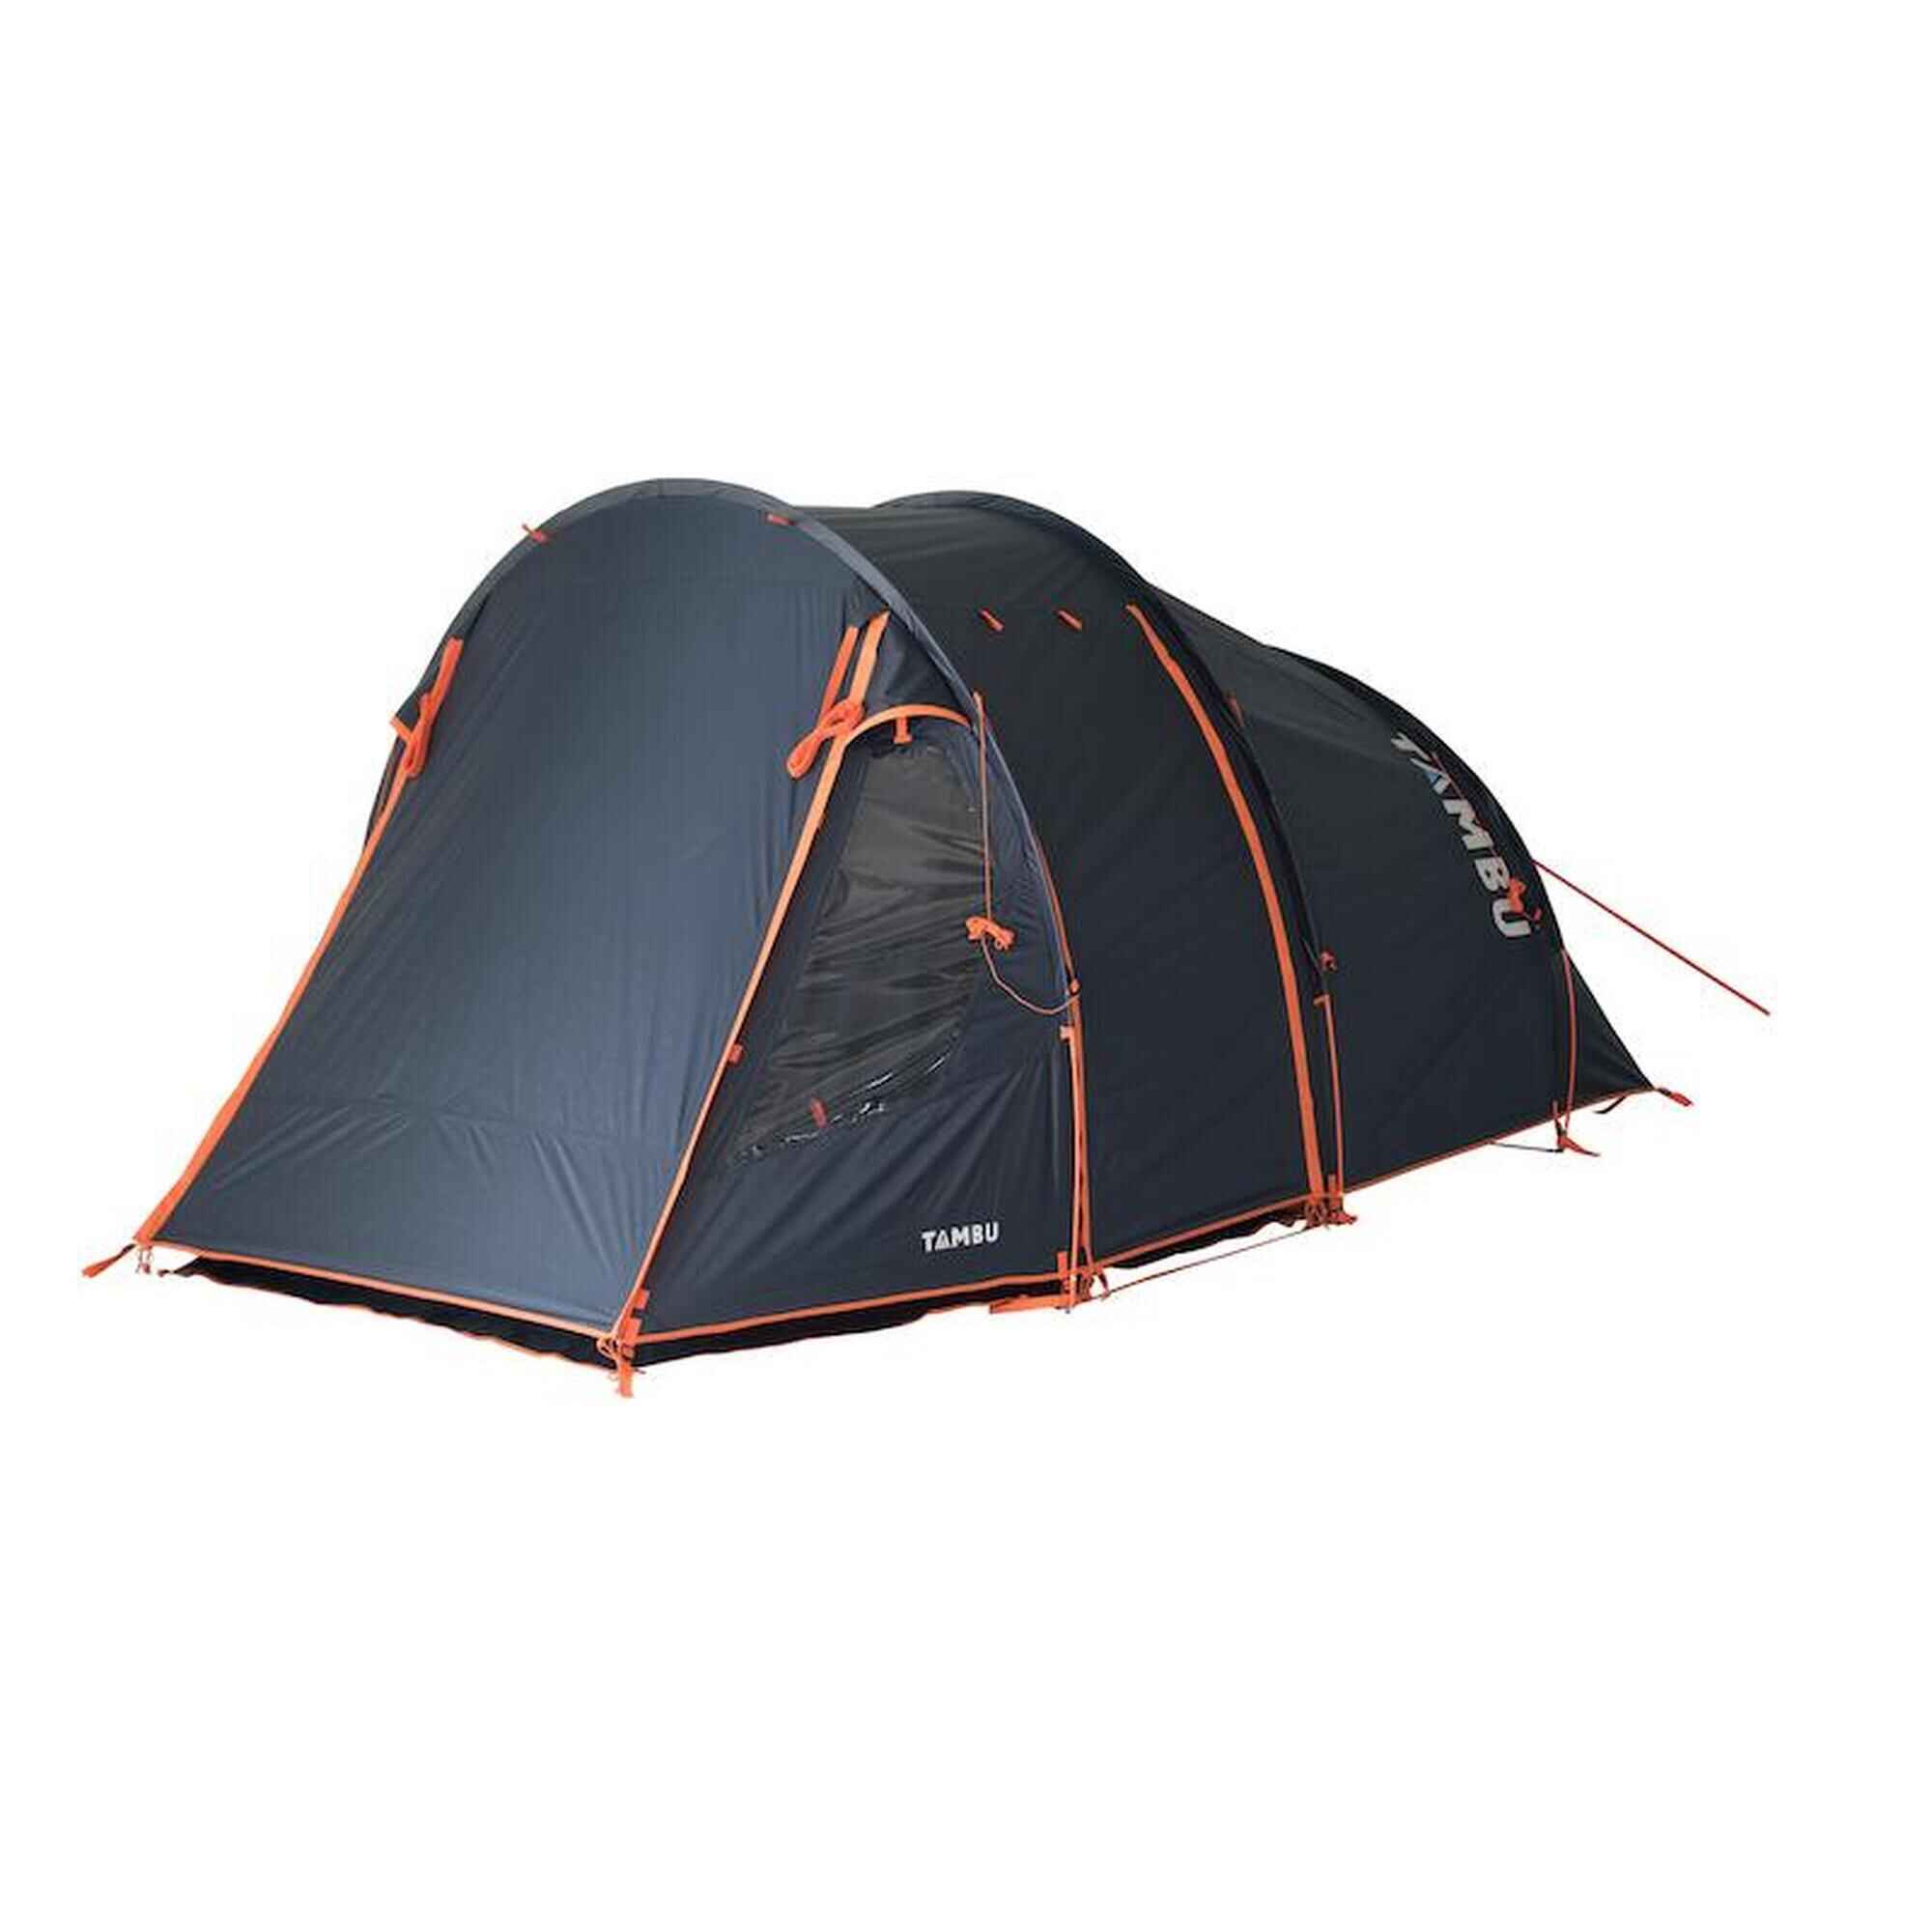 4 Personen Zelt | 4 Mann Zelte zu starken Preisen ! ✓ | Zelte